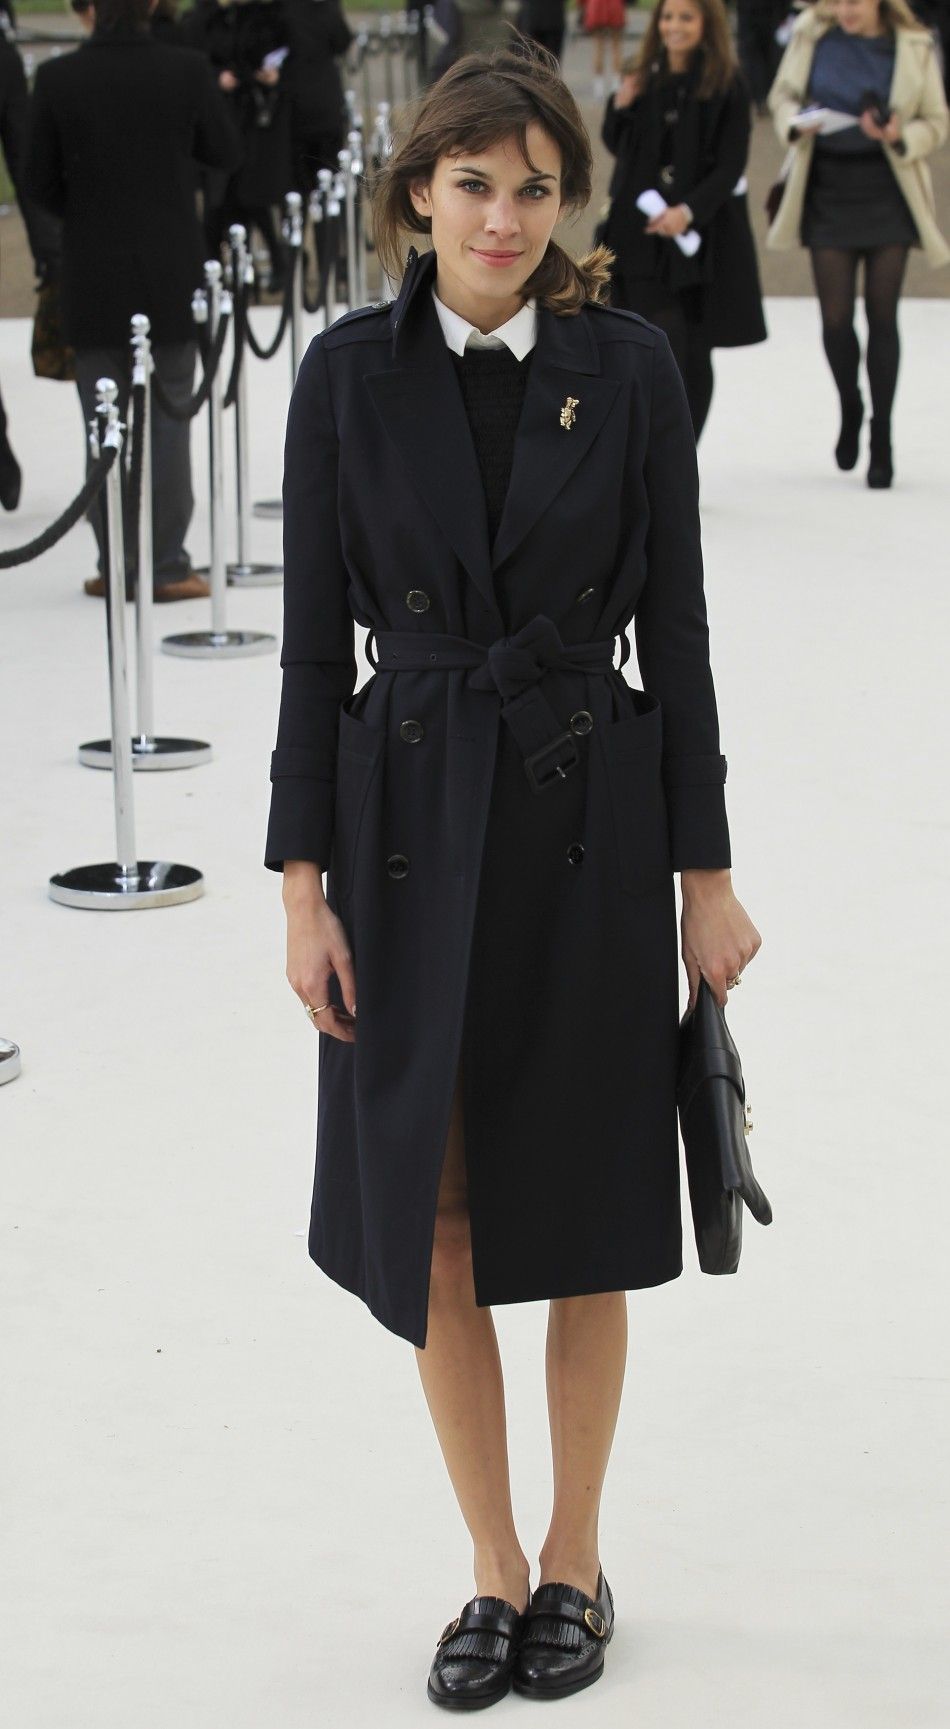 Style Icon Alexa Chung to Host 2012 Scottish Fashion Awards